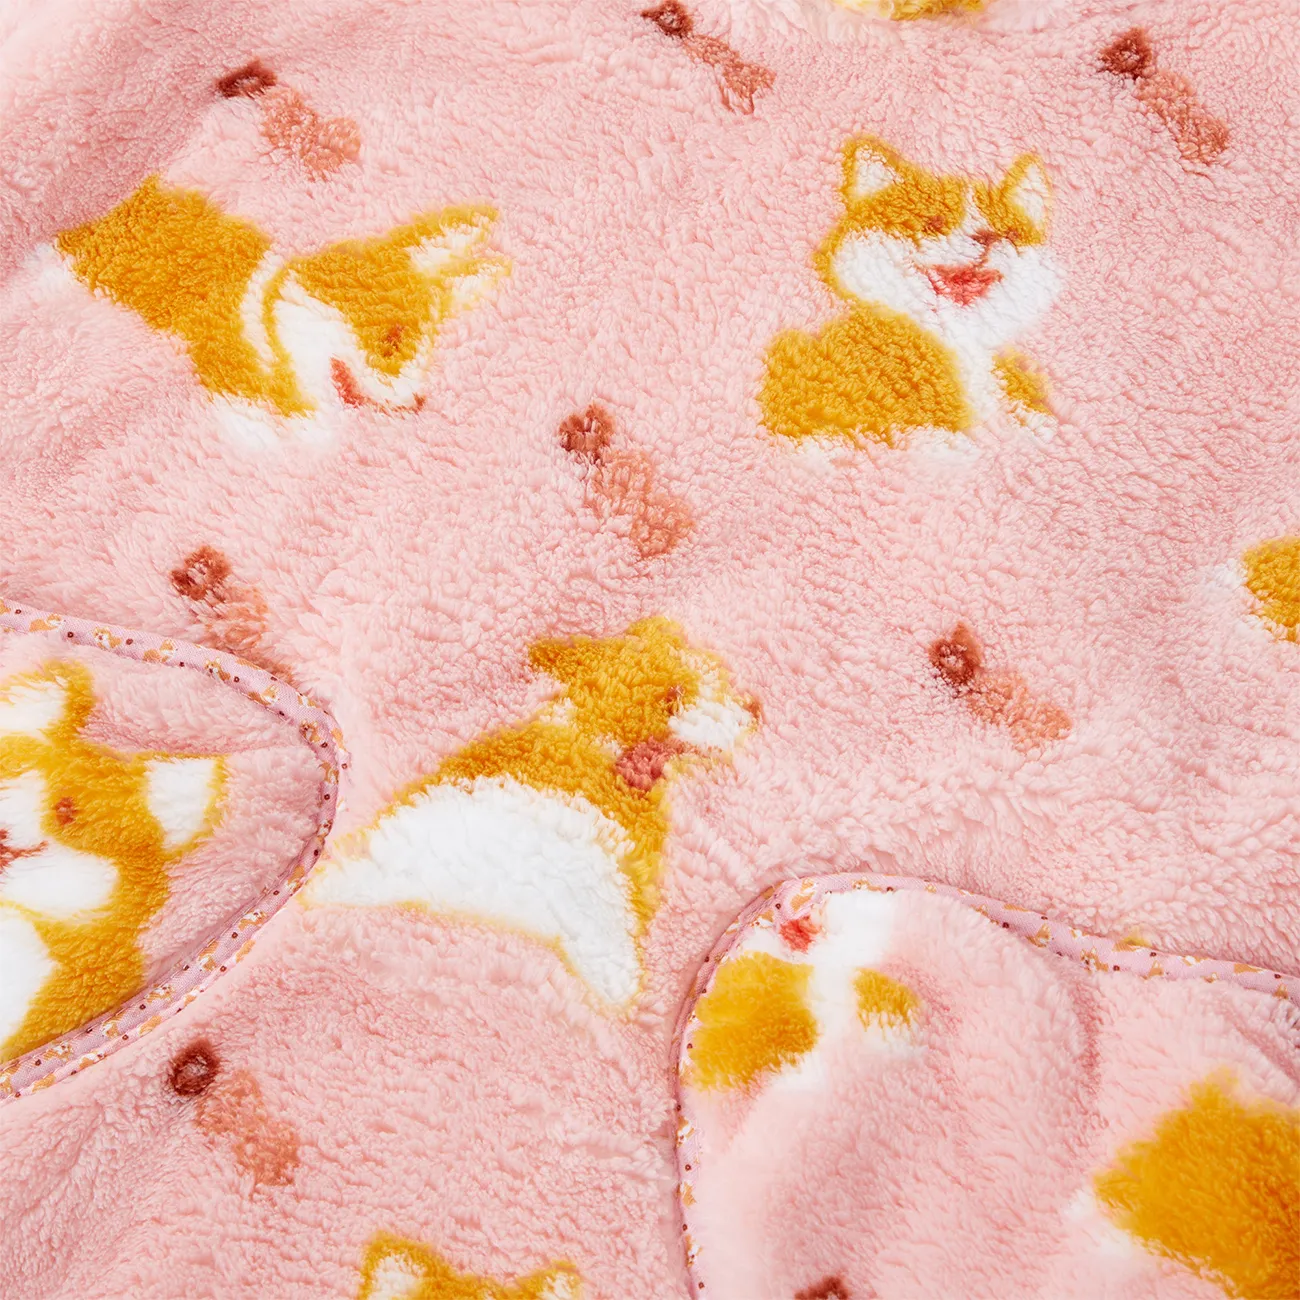 Sac de couchage à capuche en flanelle fille à motif animal pour bébé Rose big image 1